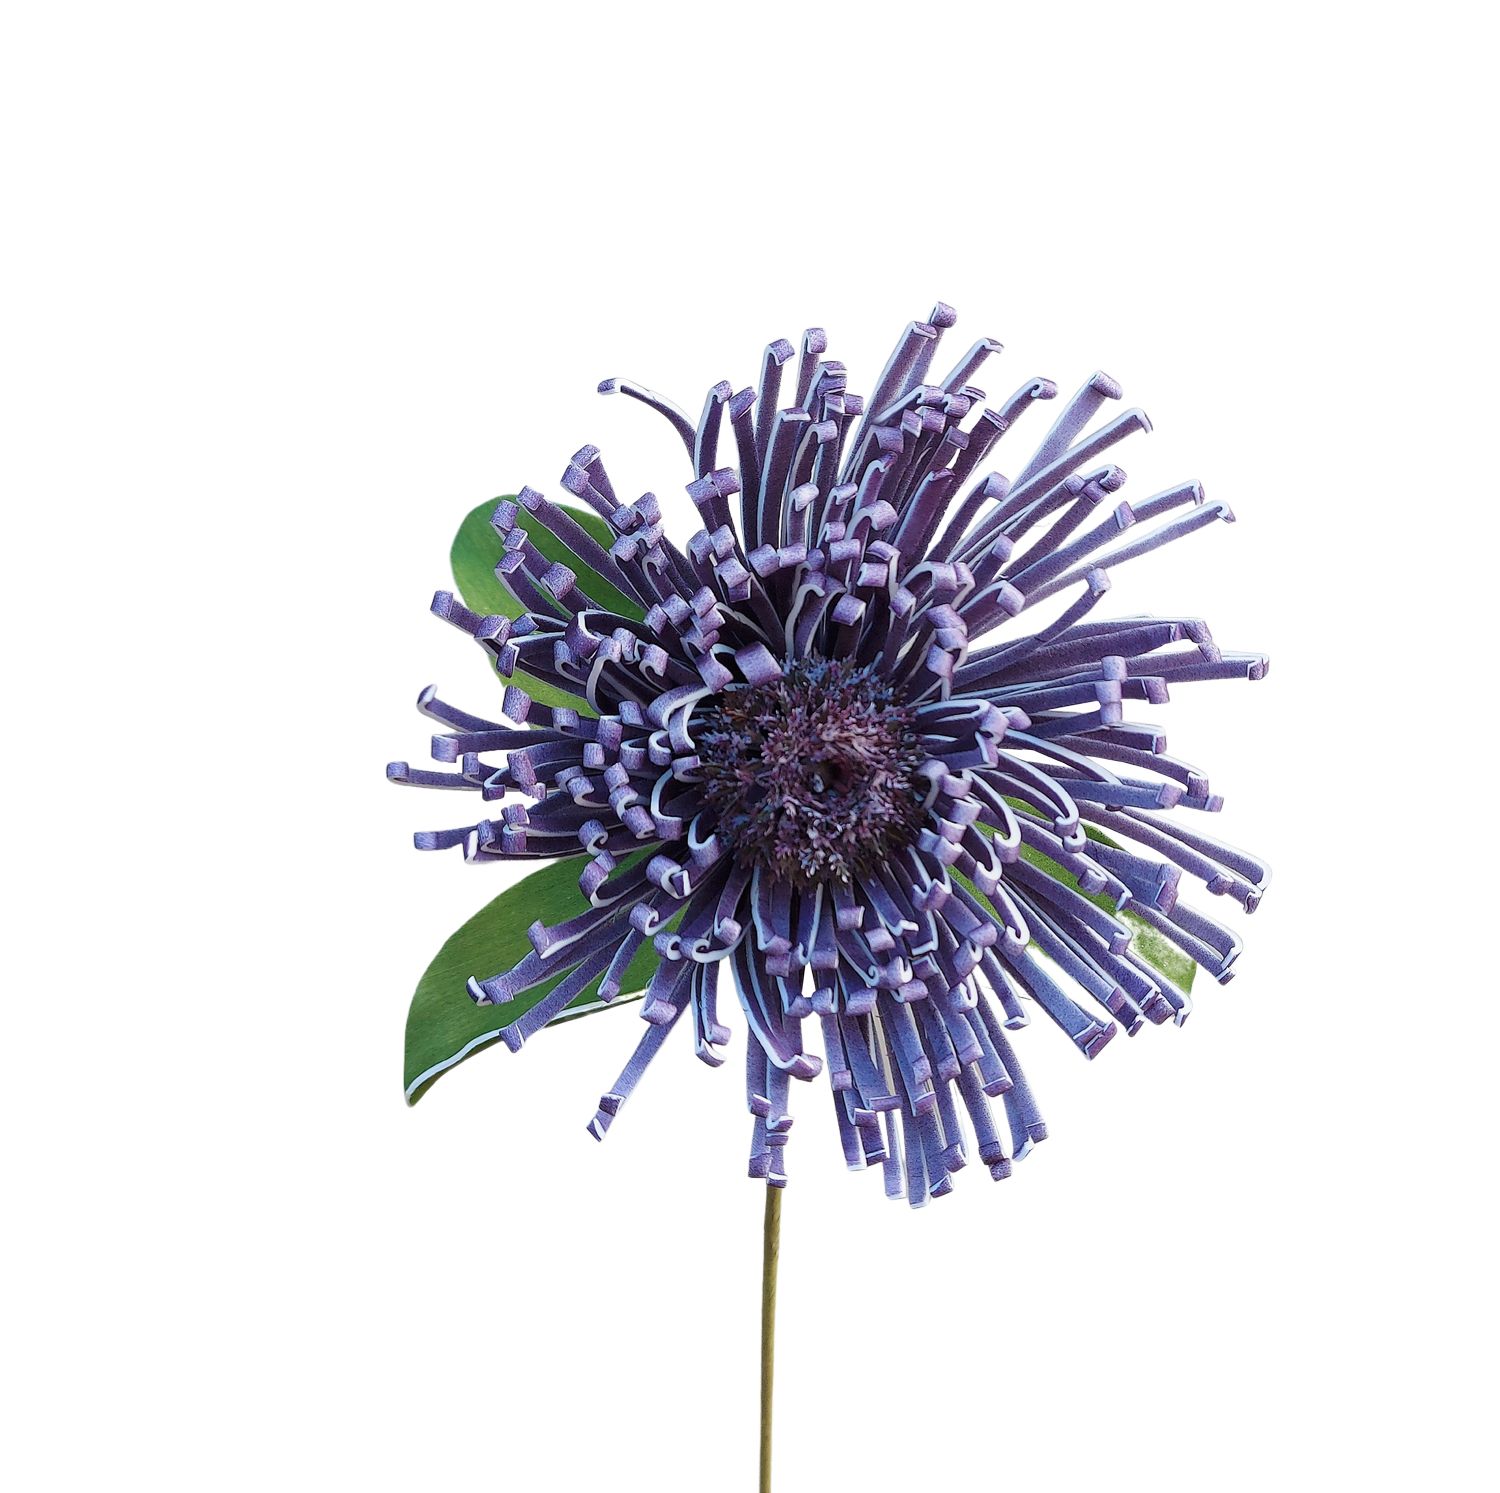 Deko Soft flower 'Nadelkissenprotea', 103 cm, dunkelviolett